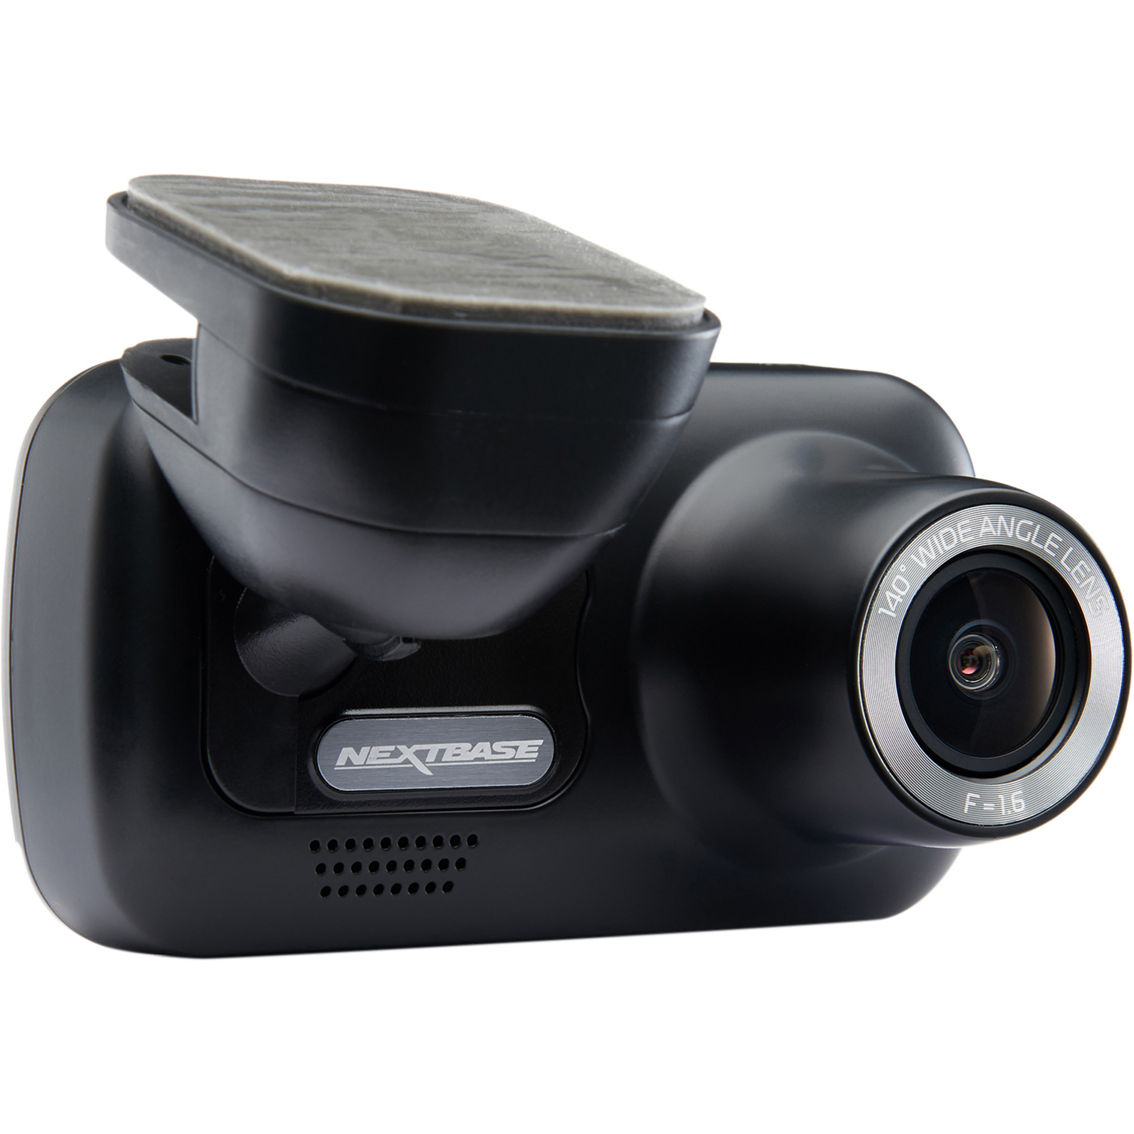 Nextbase 222 Dash Cam, Portable Gps & Dash Cams, Patio, Garden & Garage